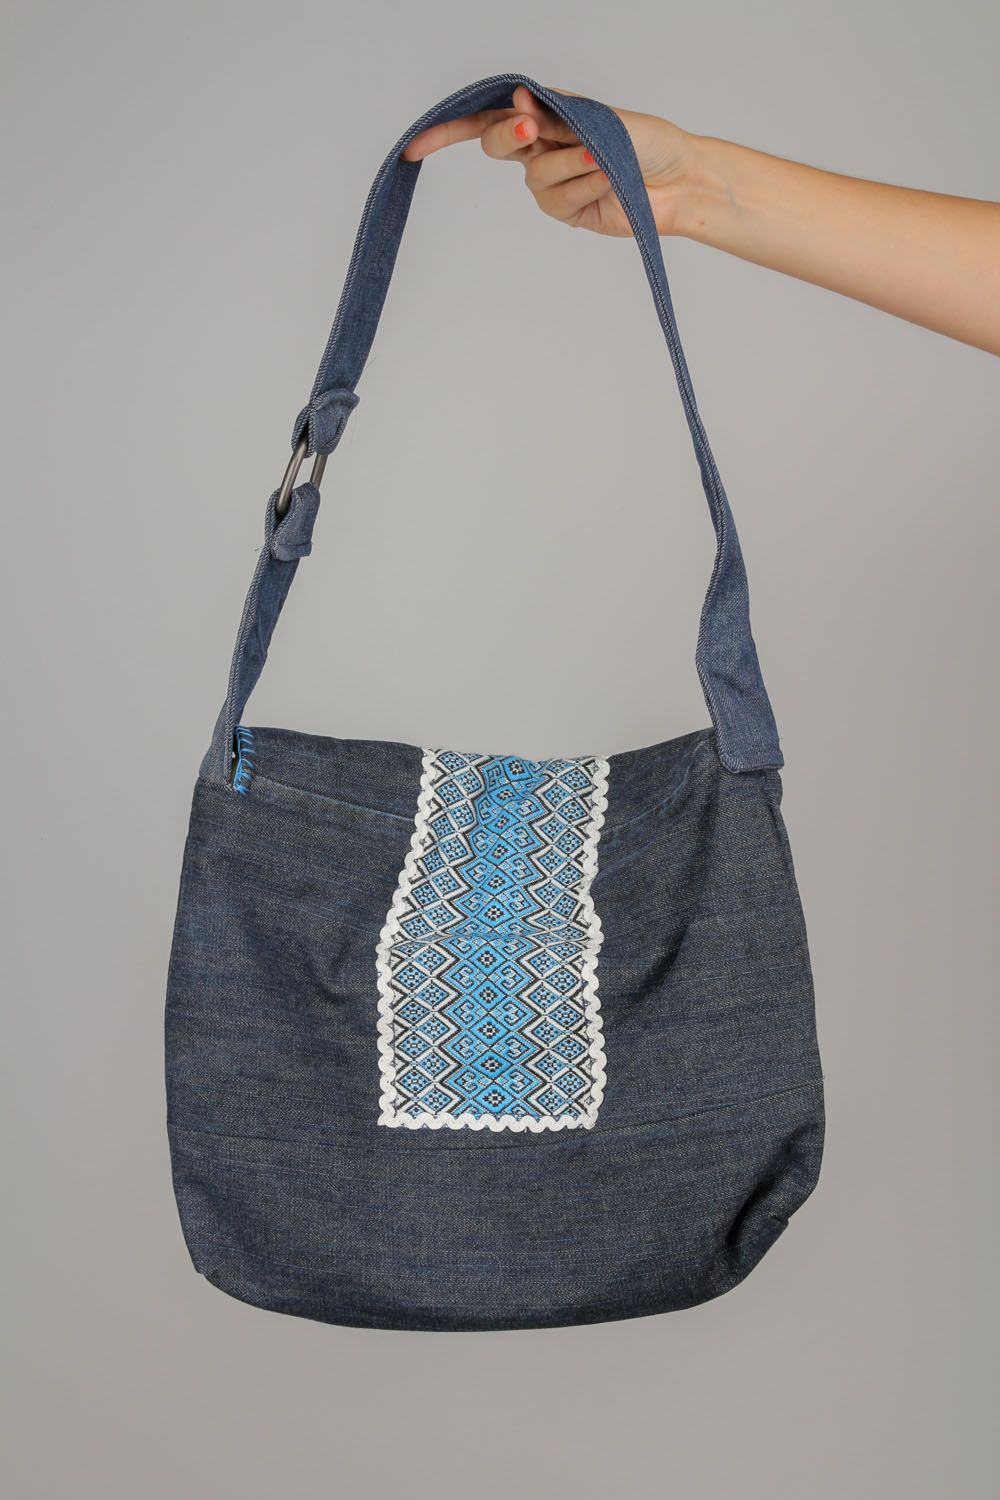 Gros sac à épaule en jean Ornementé fait main bleu original pour femme photo 5